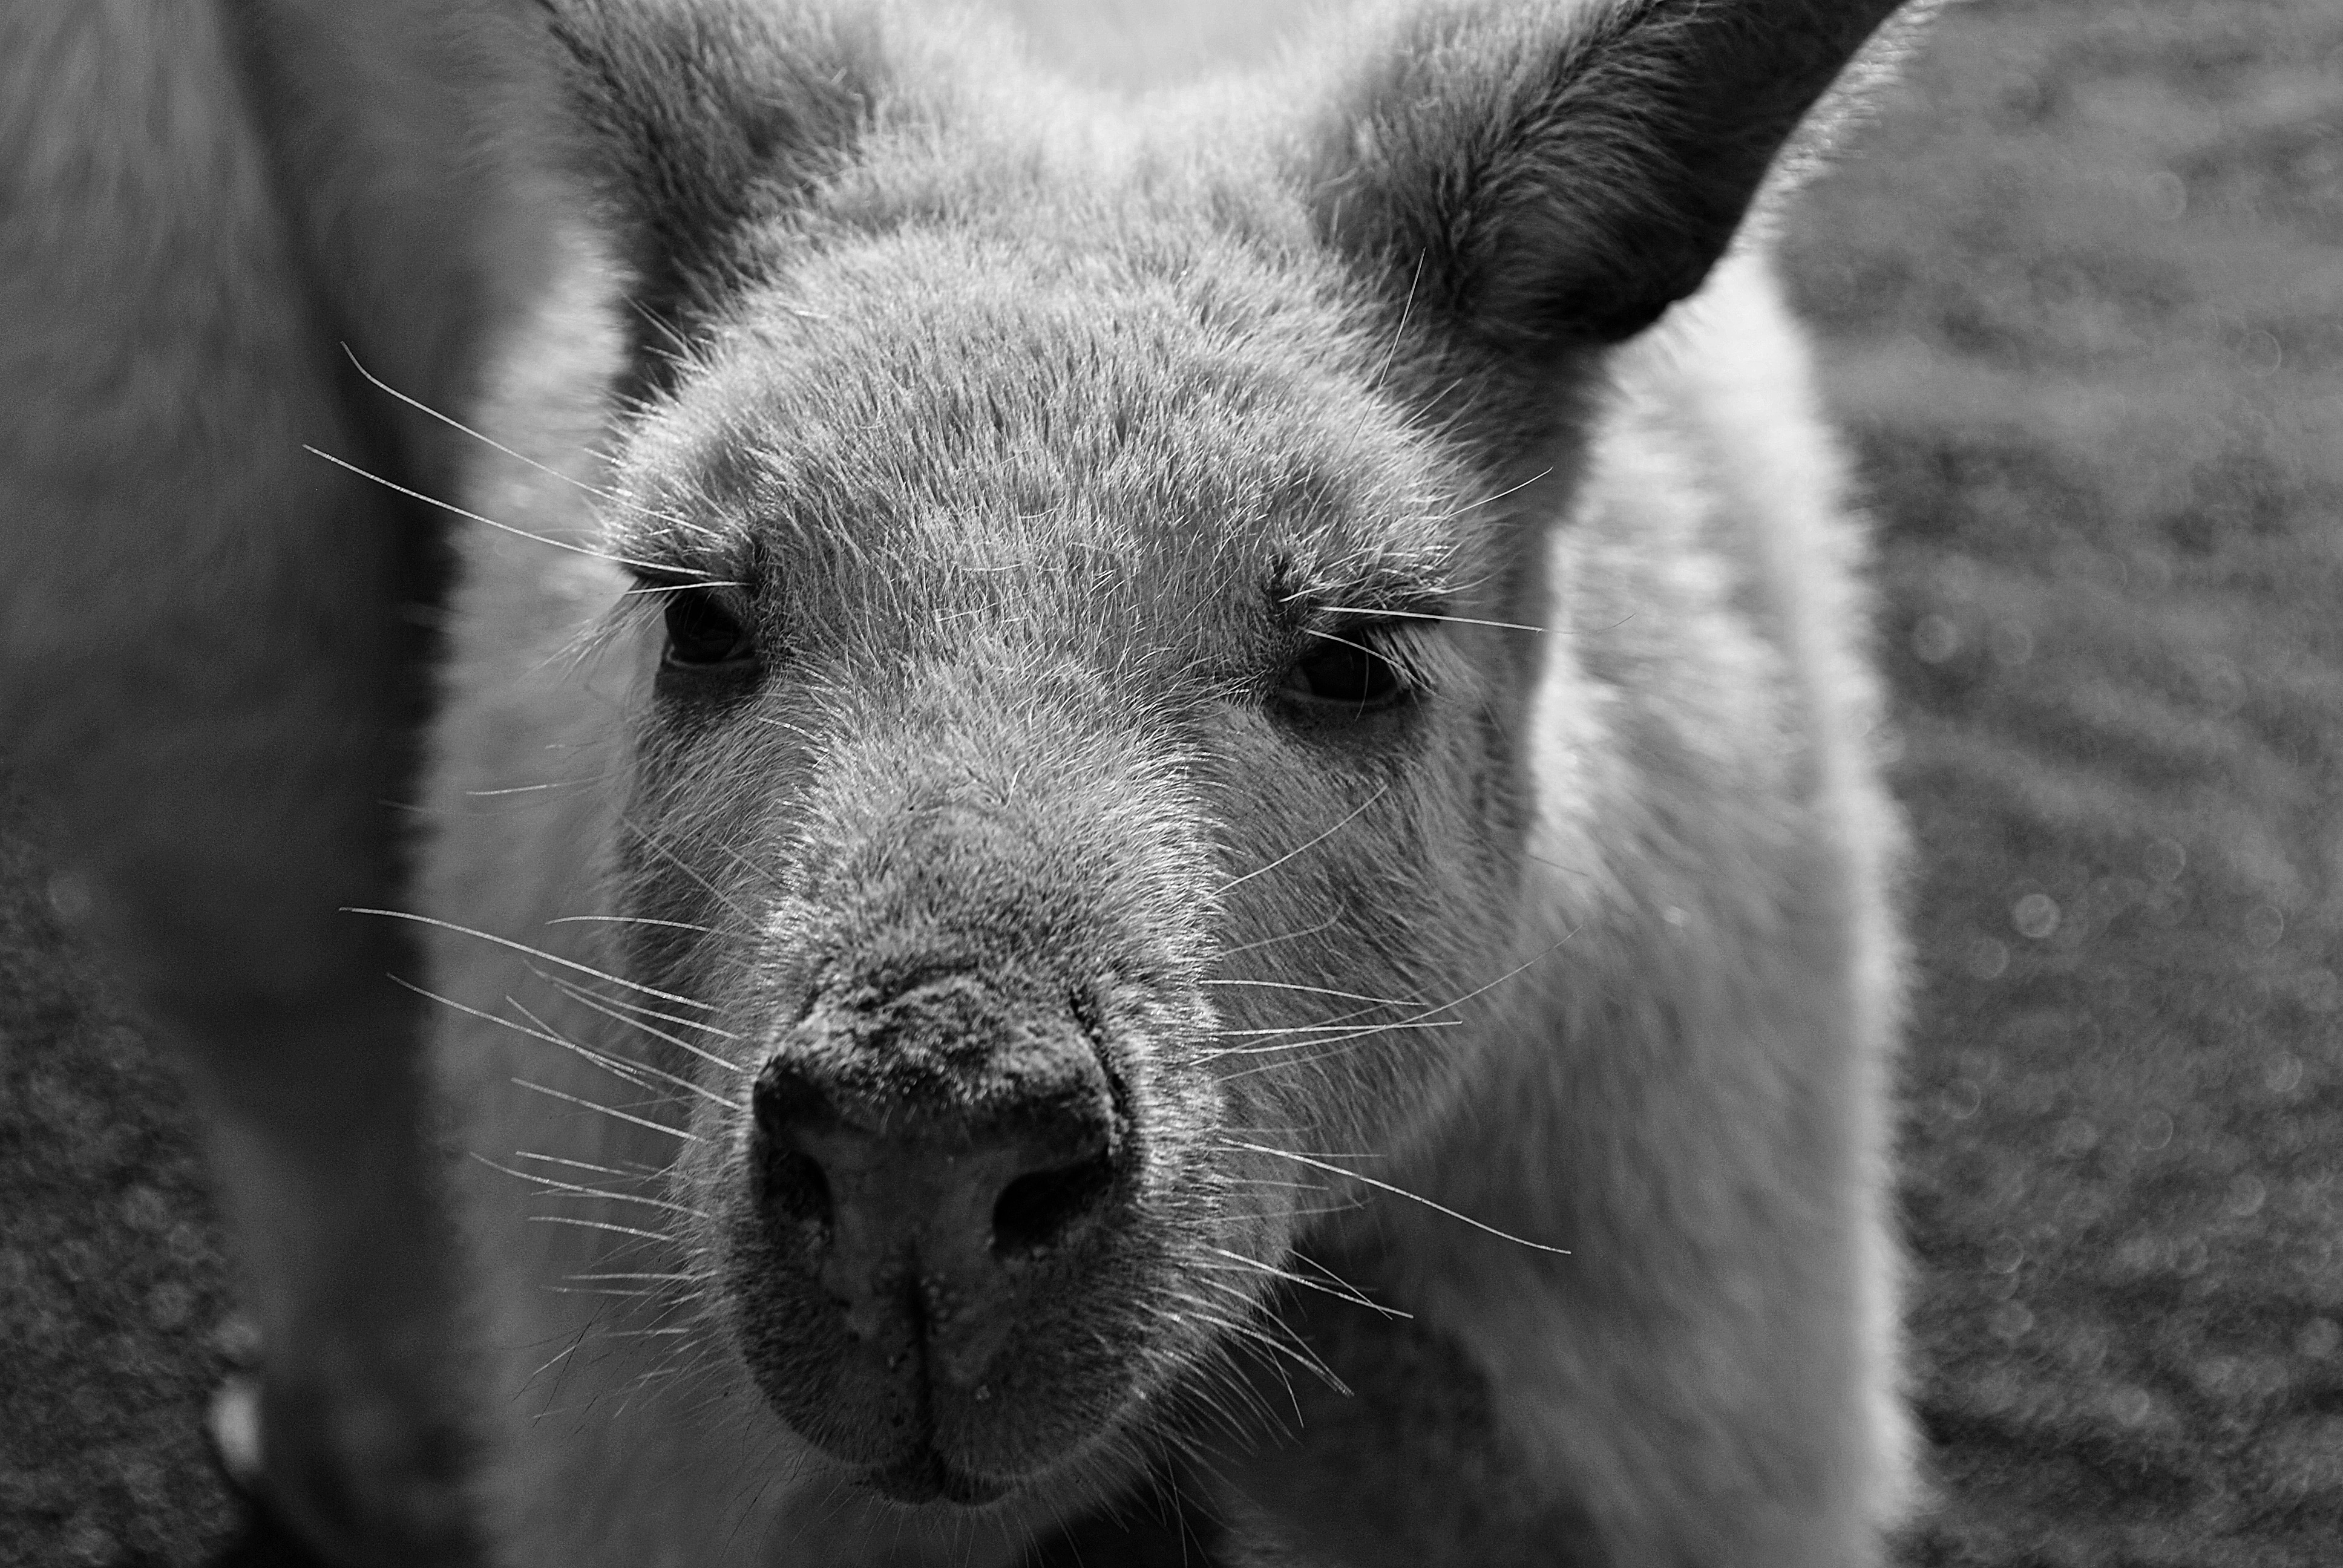 greyscale photo of kangaroo